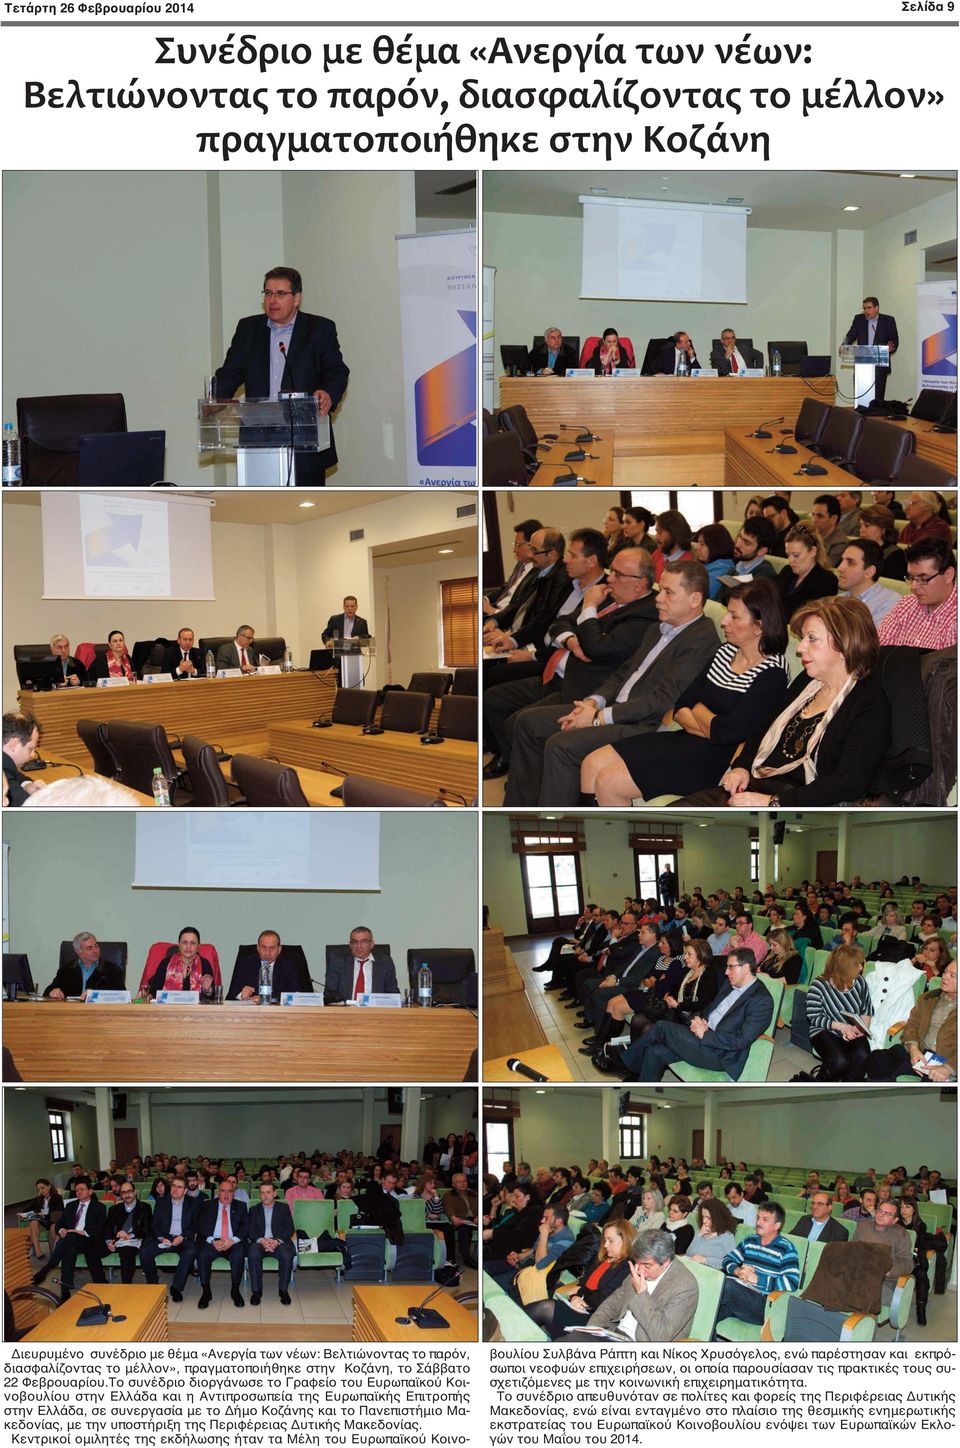 Το συνέδριο διοργάνωσε το Γραφείο του Ευρωπαϊκού Κοινοβουλίου στην Ελλάδα και η Αντιπροσωπεία της Ευρωπαϊκής Επιτροπής στην Ελλάδα, σε συνεργασία με το Δήμο Κοζάνης και το Πανεπιστήμιο Μακεδονίας, με